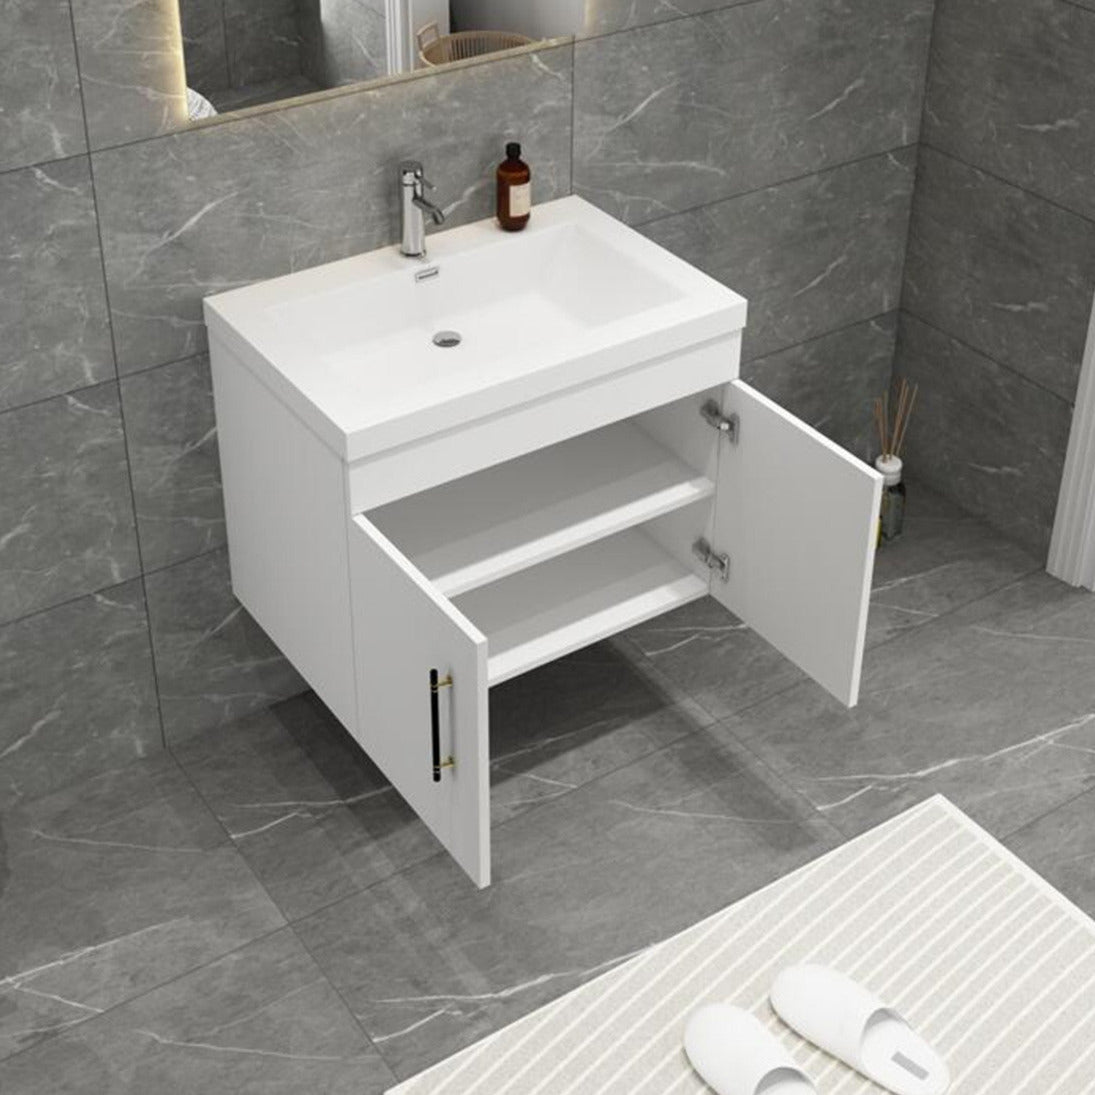 Elsa 30" Wall Mounted Bathroom Vanity with Reinforced Acrylic Sink